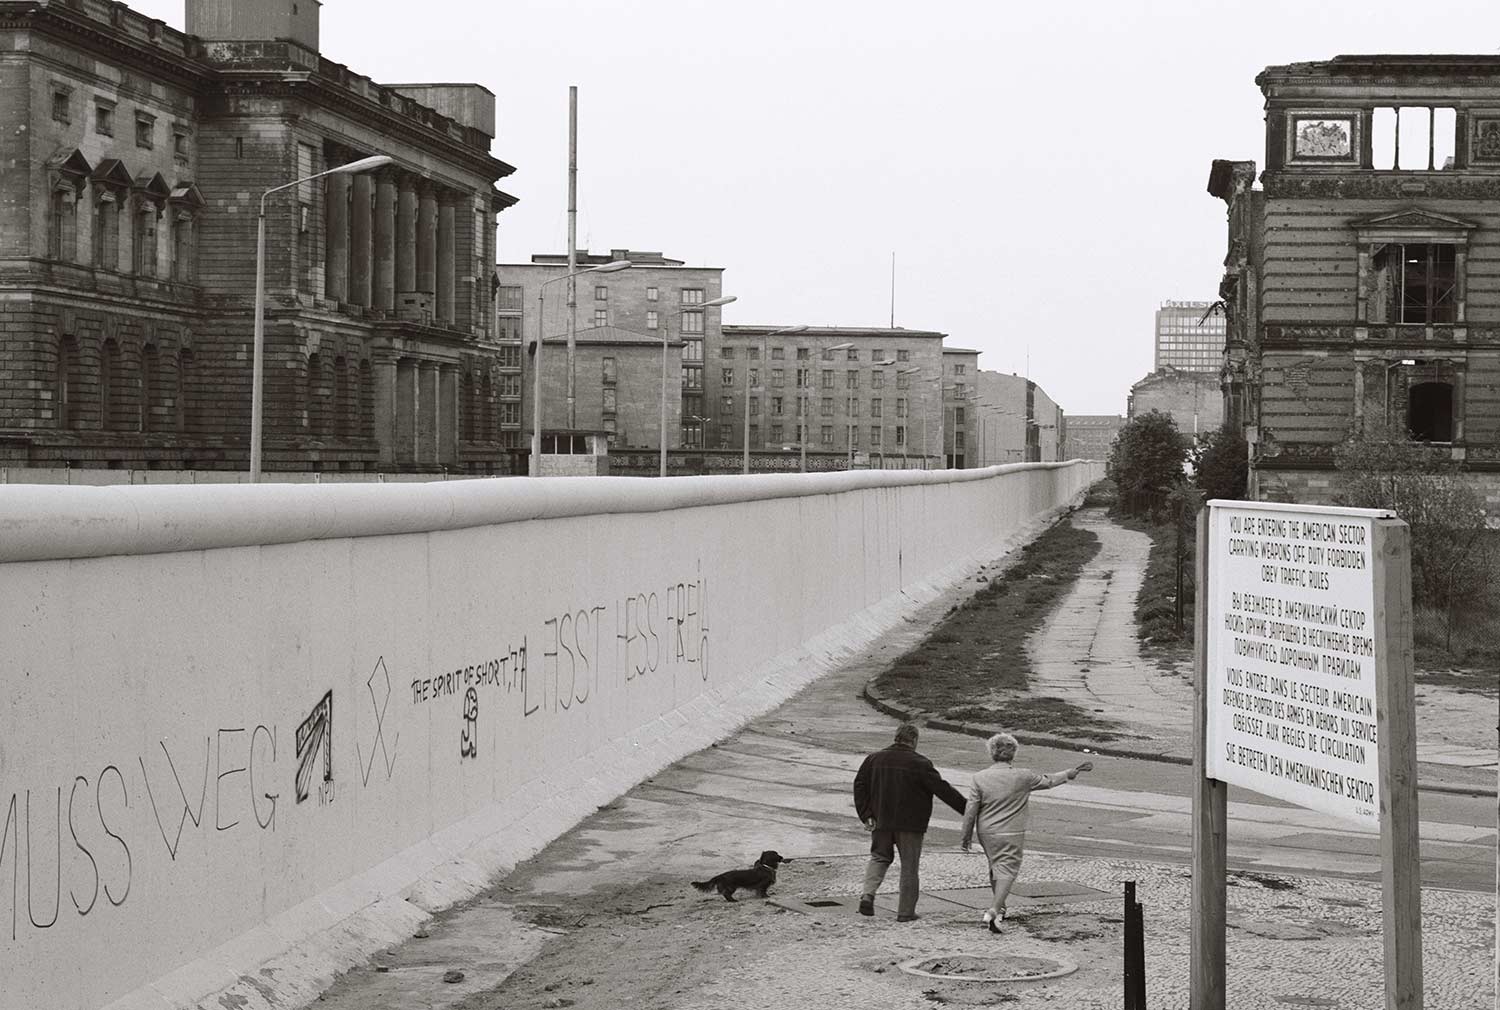 Fotovergleich: Die Berliner Mauer damals und heute